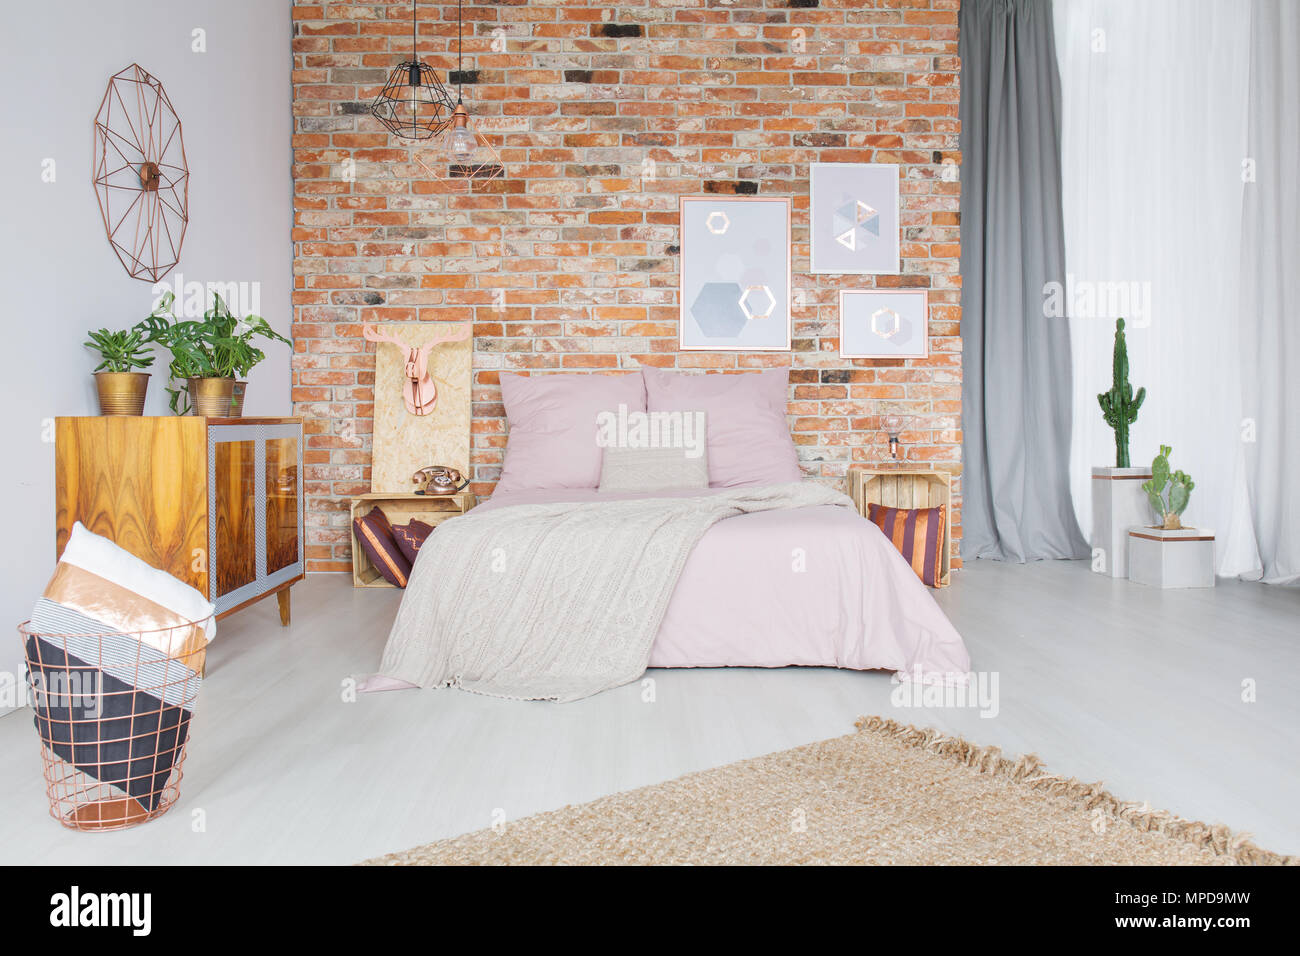 Industrielle Schlafzimmer mit Kupfer Zubehör und Wand Stockfoto